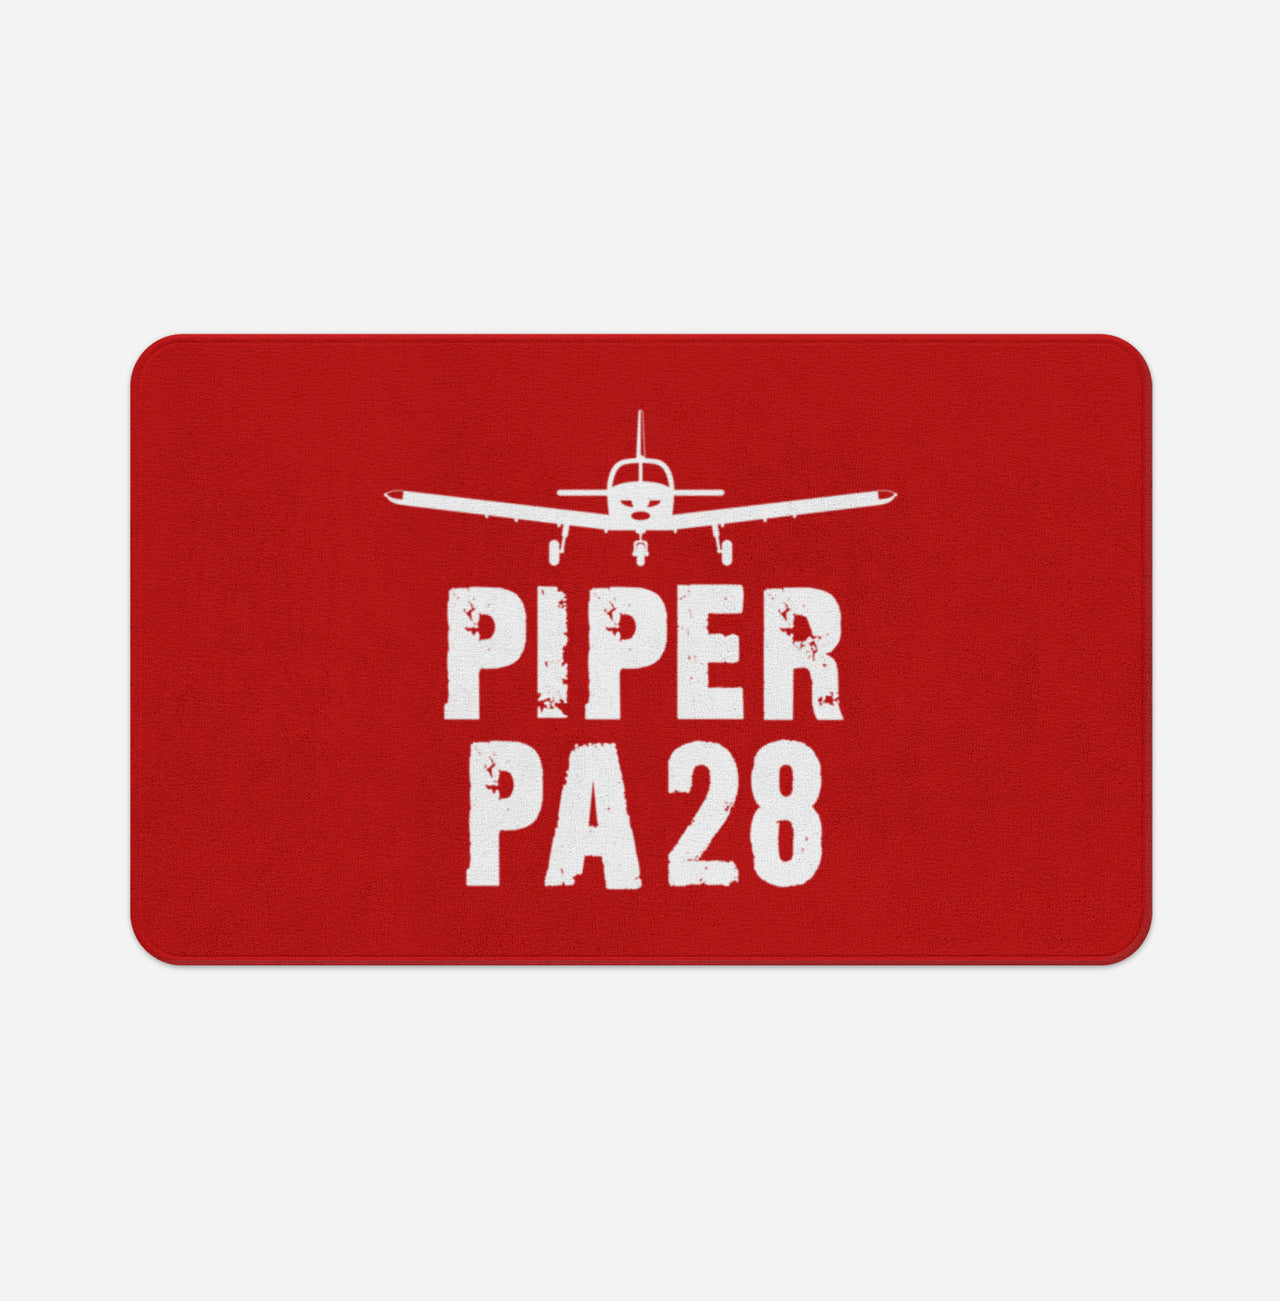 Piper PA28 & Plane Designed Bath Mats